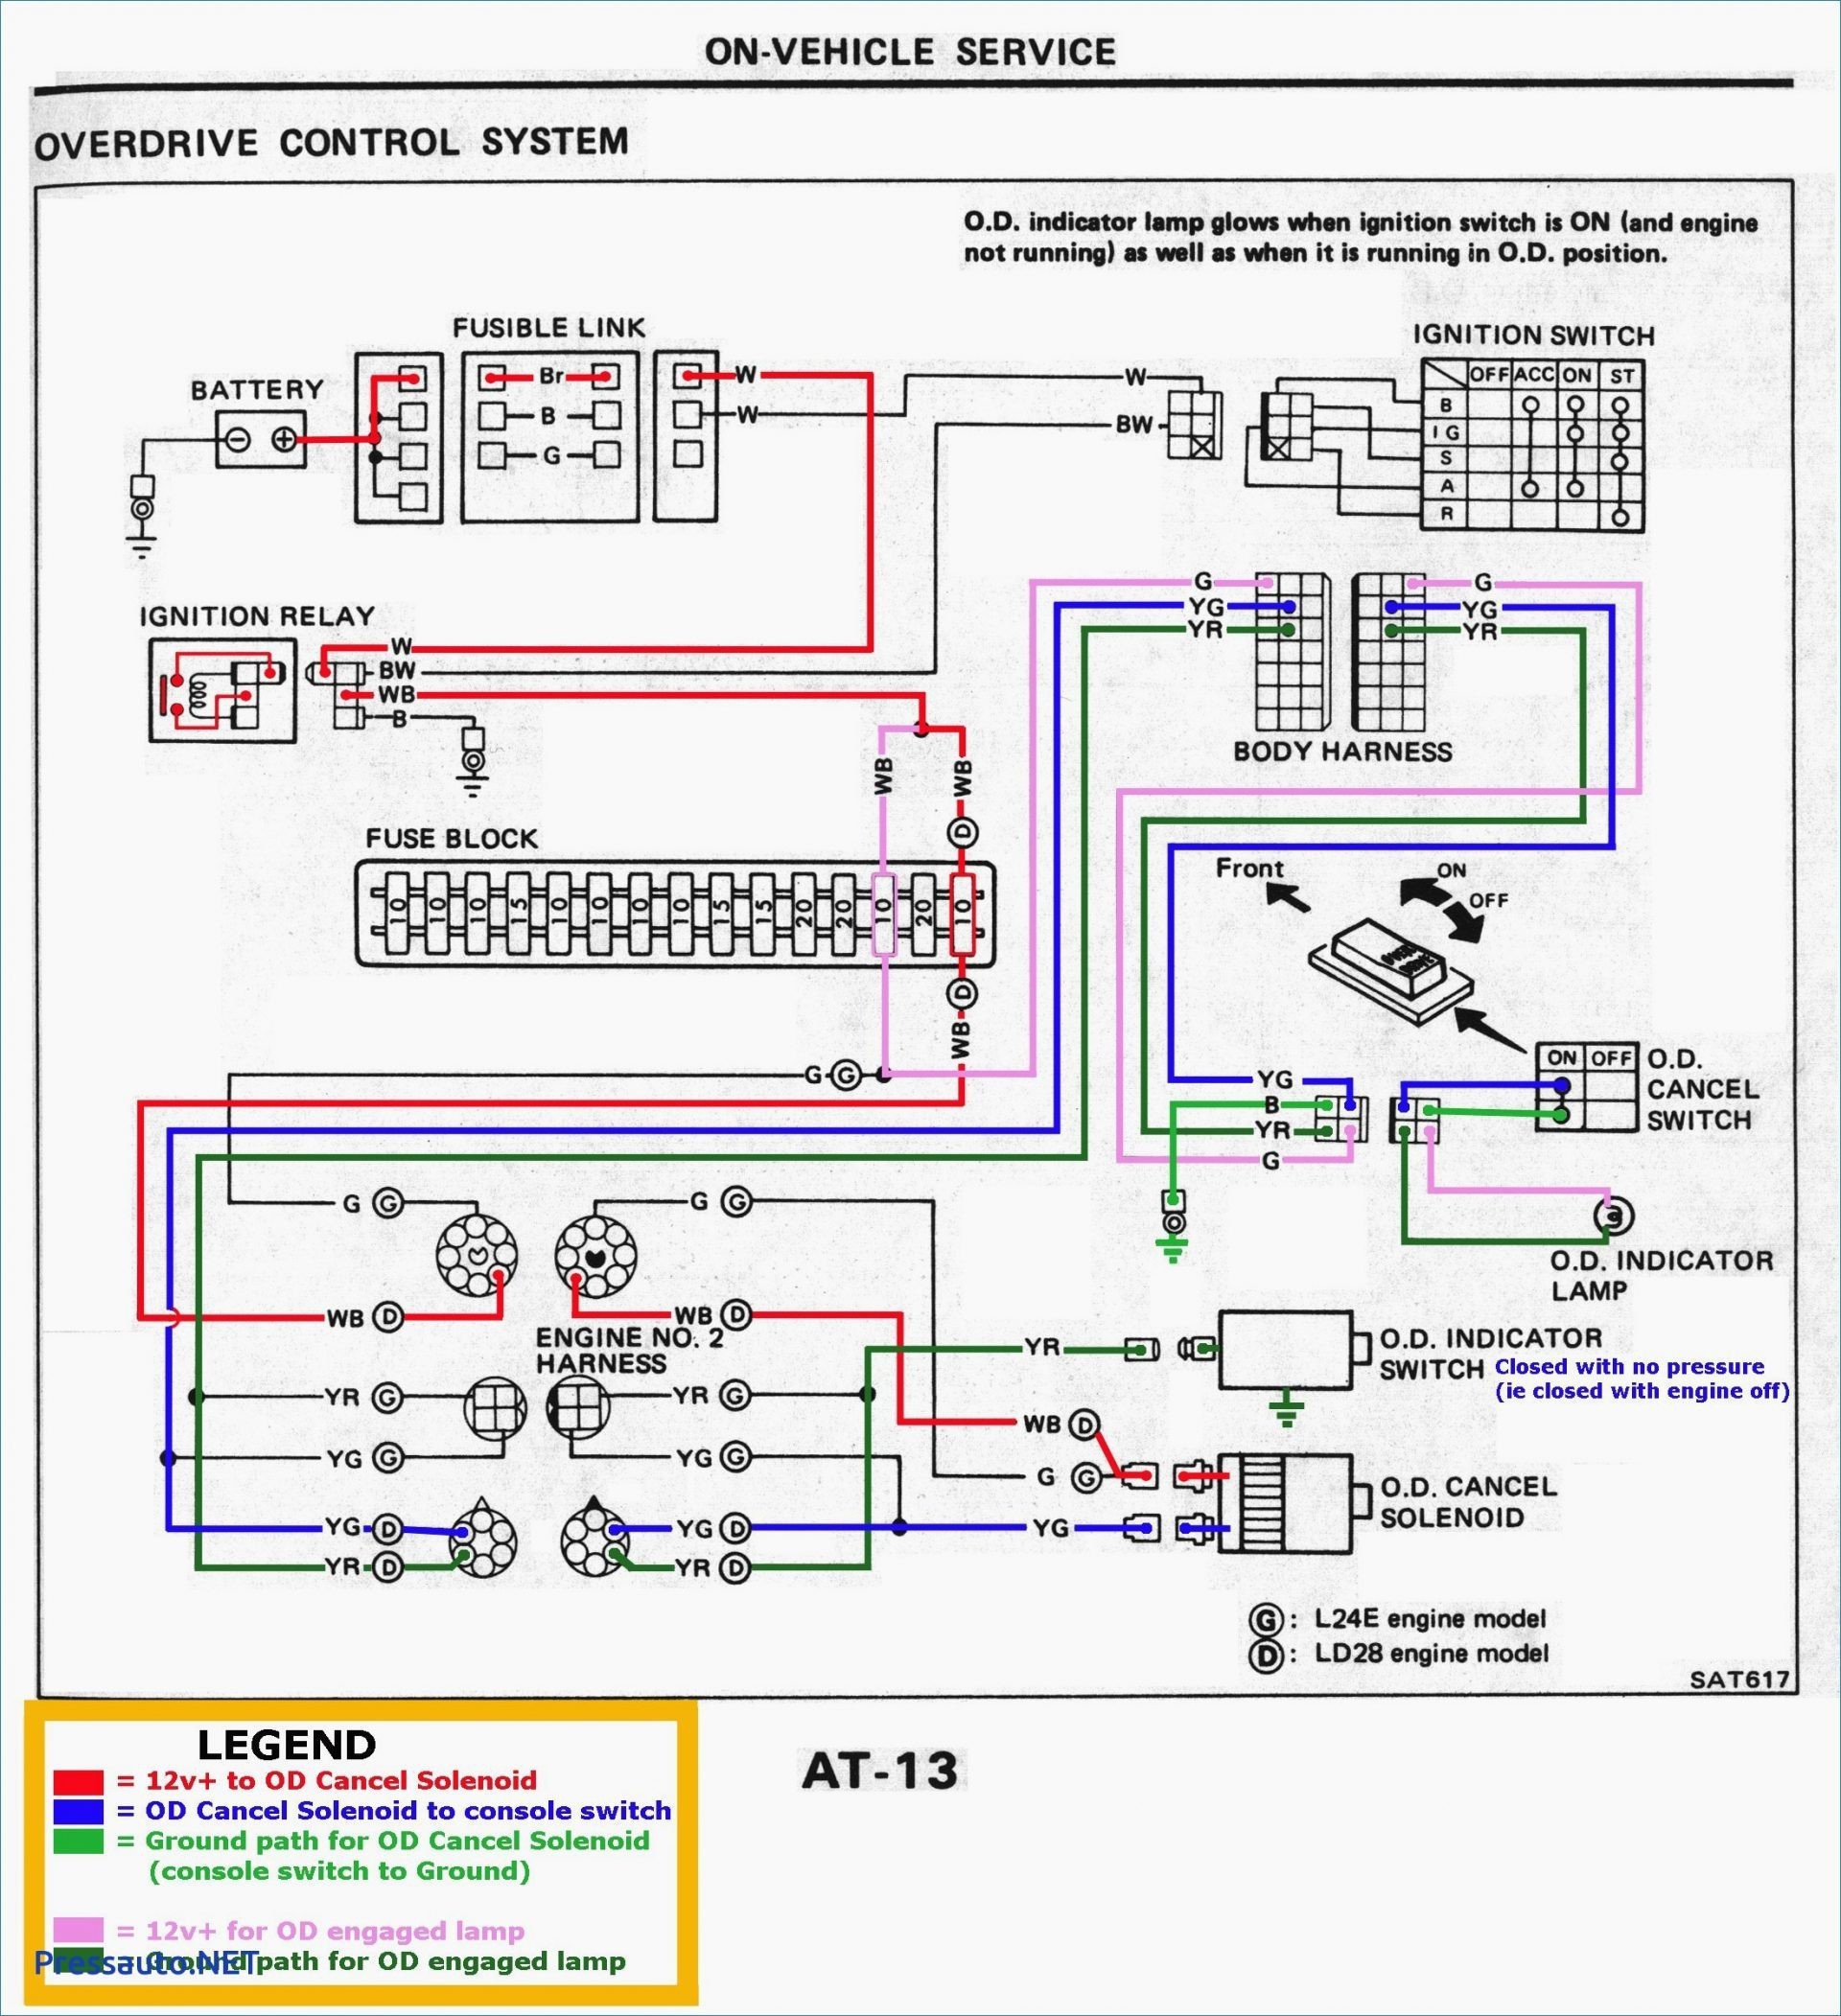 Third Brake Light Wiring Diagram Wiring Diagram Rj45 Archives Joescablecar Of Third Brake Light Wiring Diagram